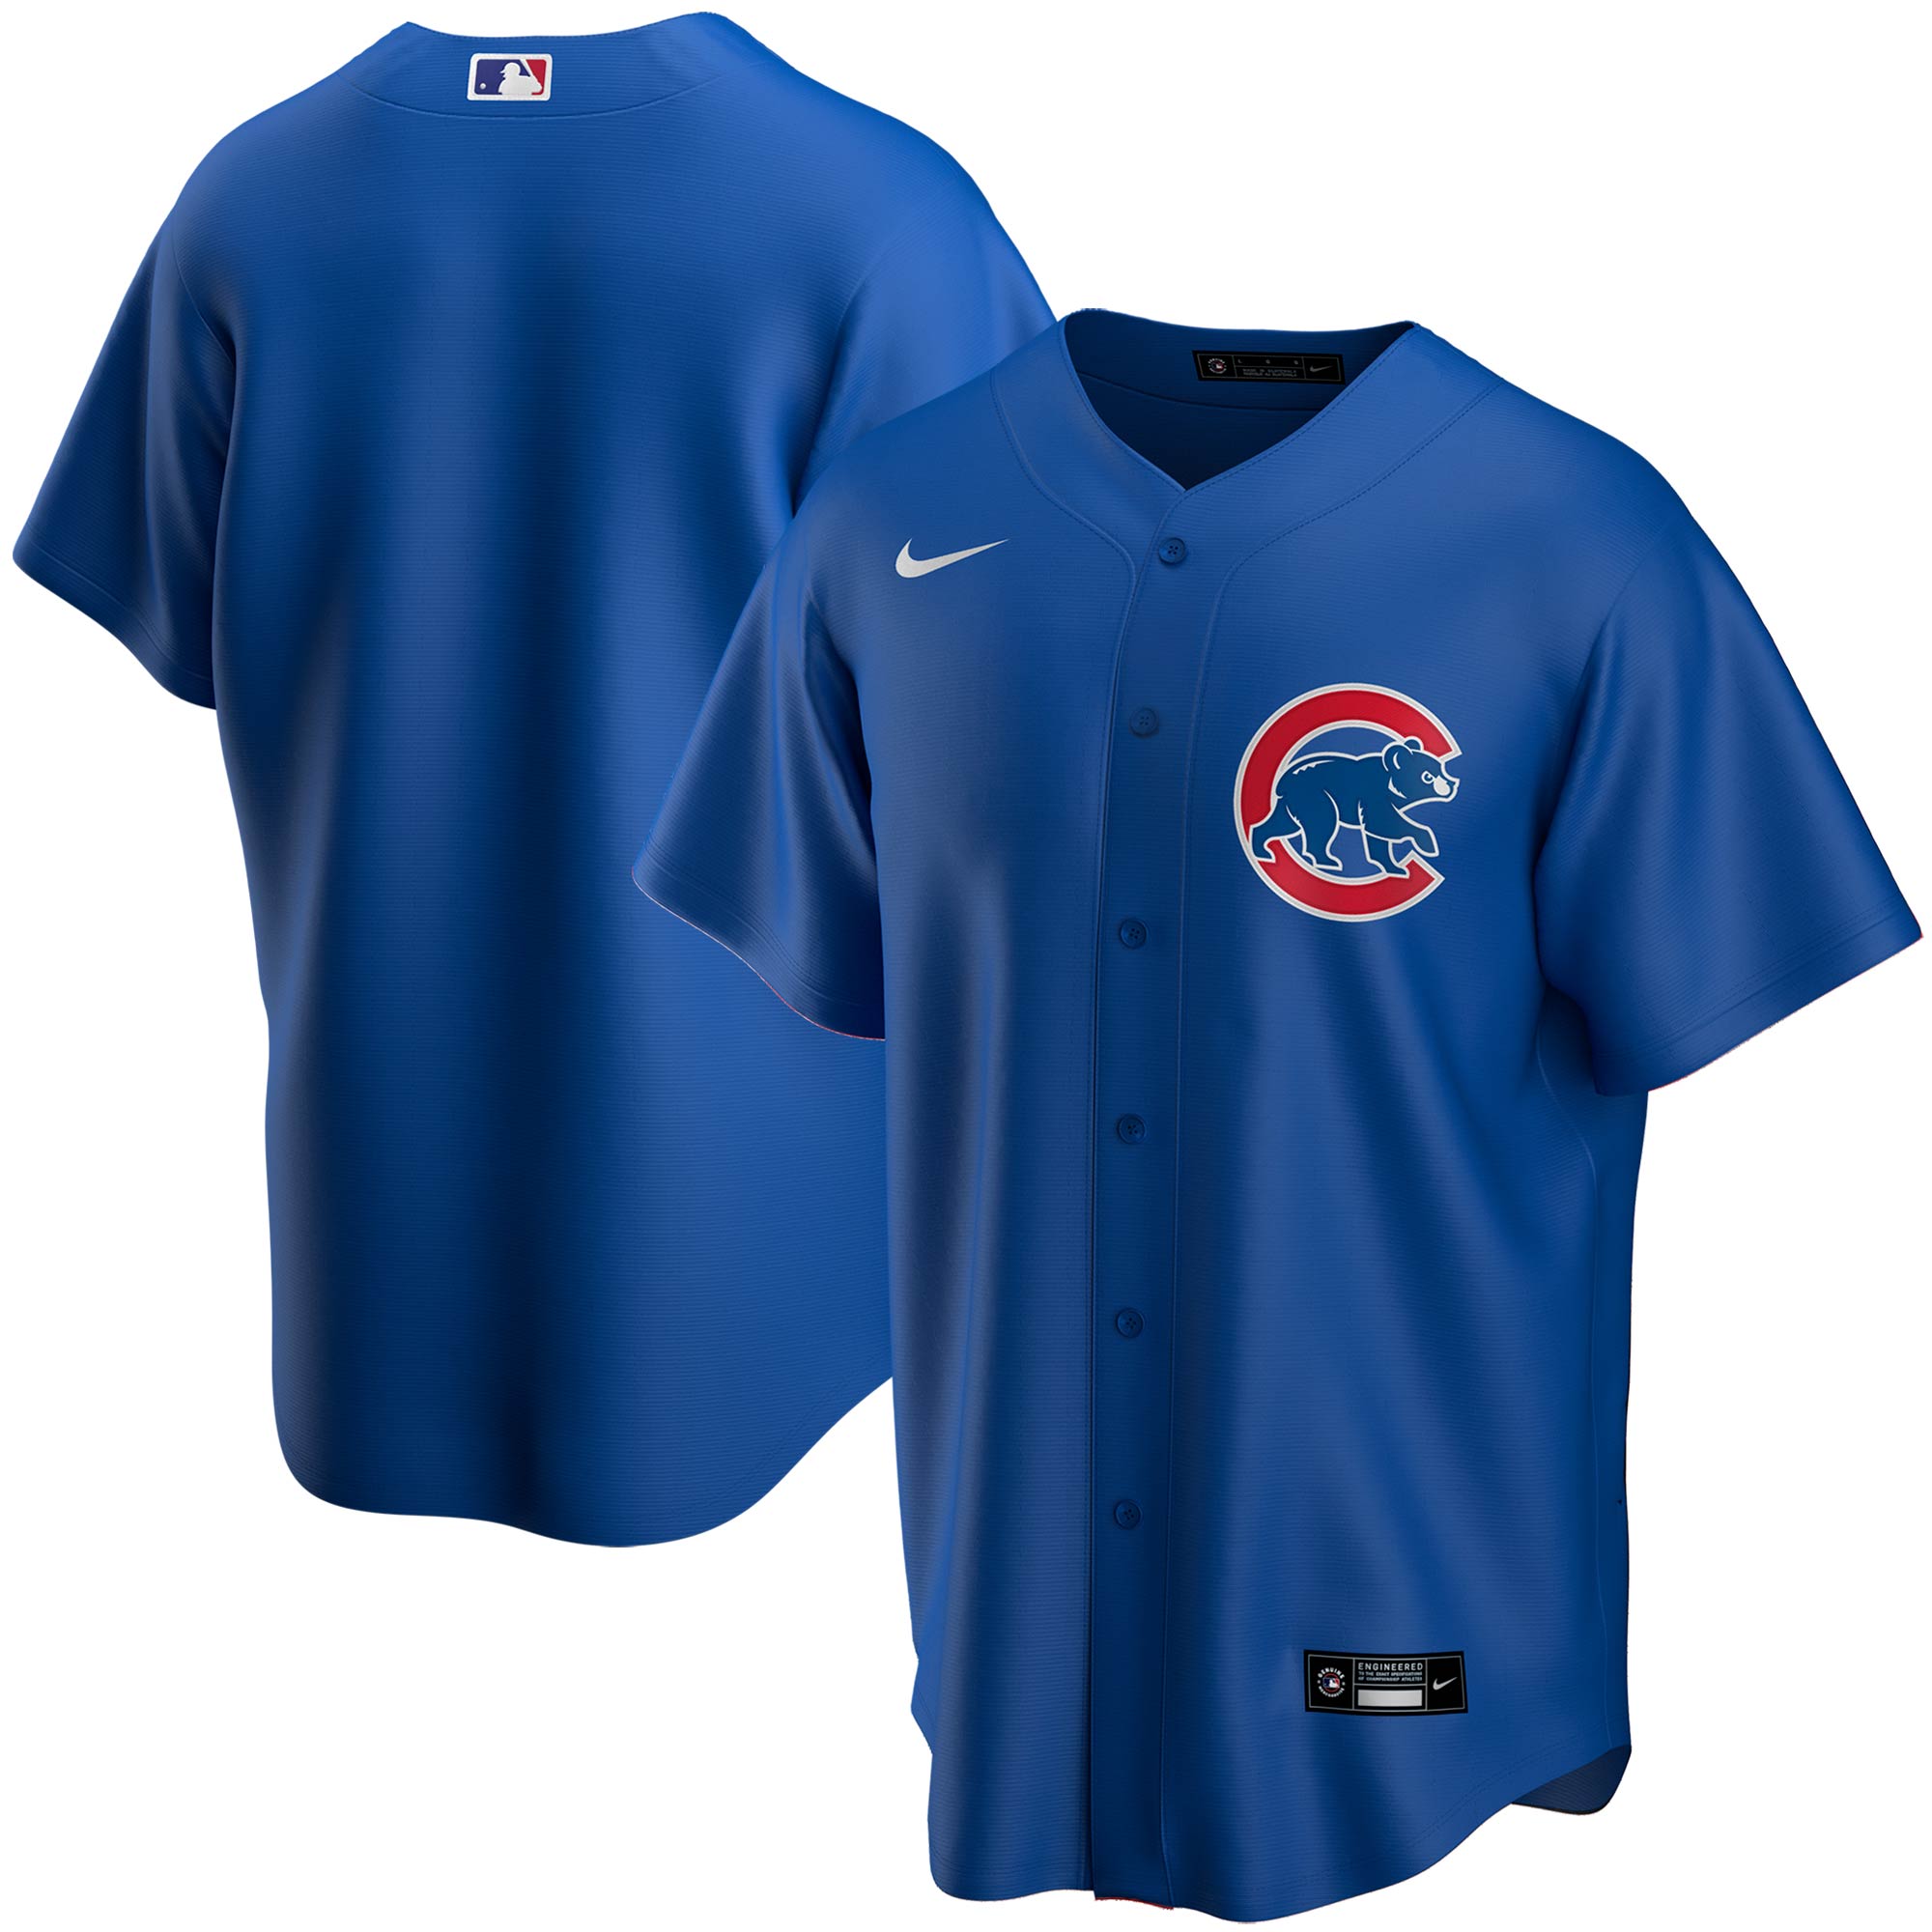 blue chicago cubs uniform